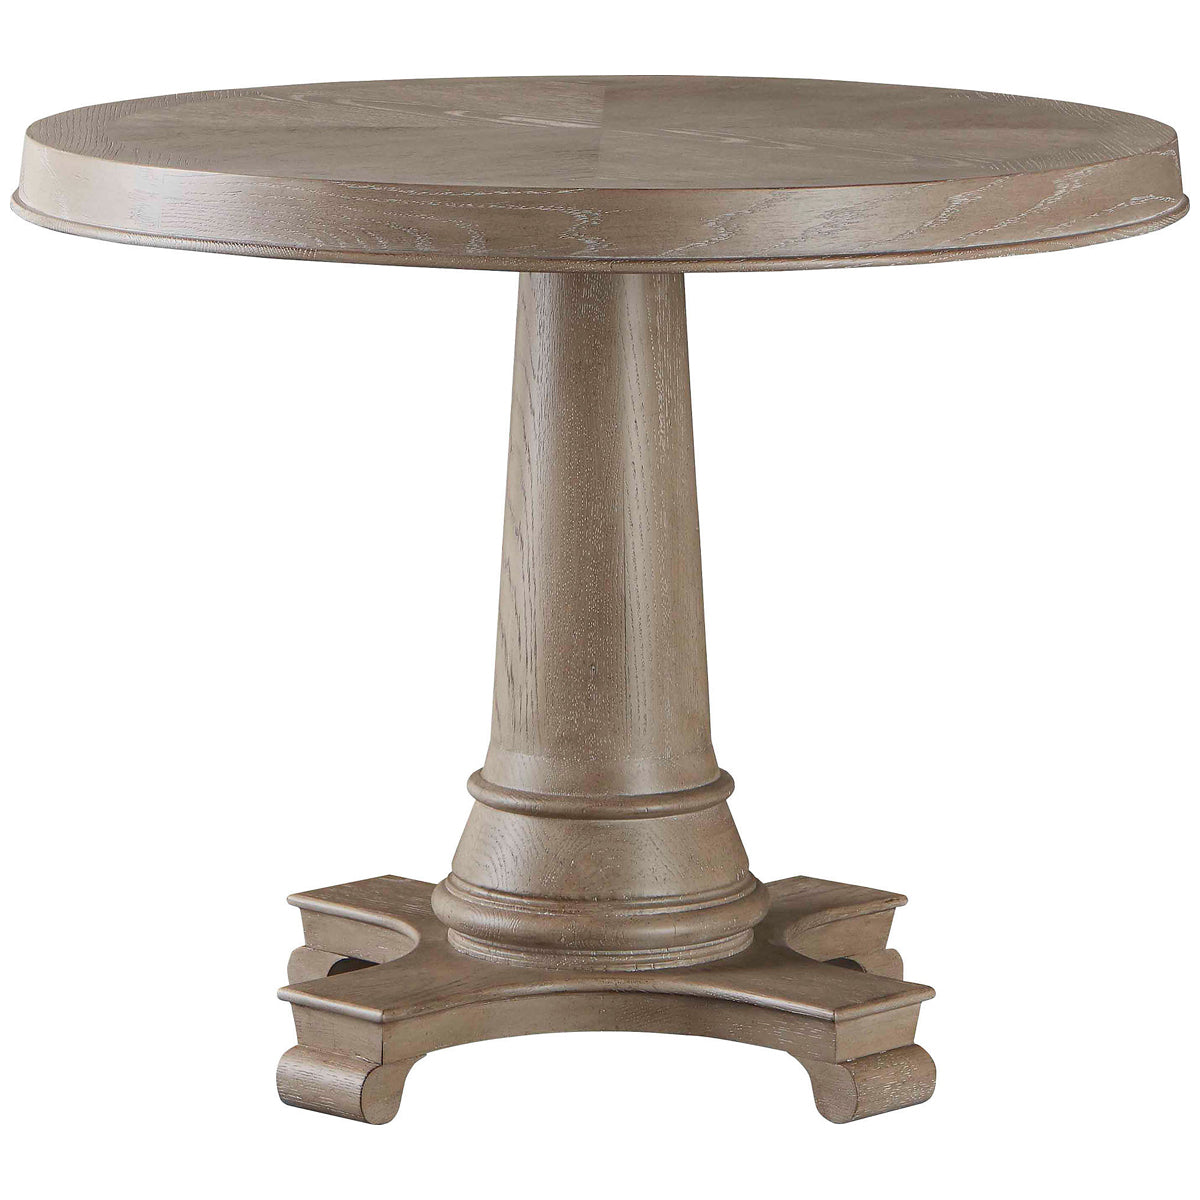 Baker Furniture Ansel Table MR8458